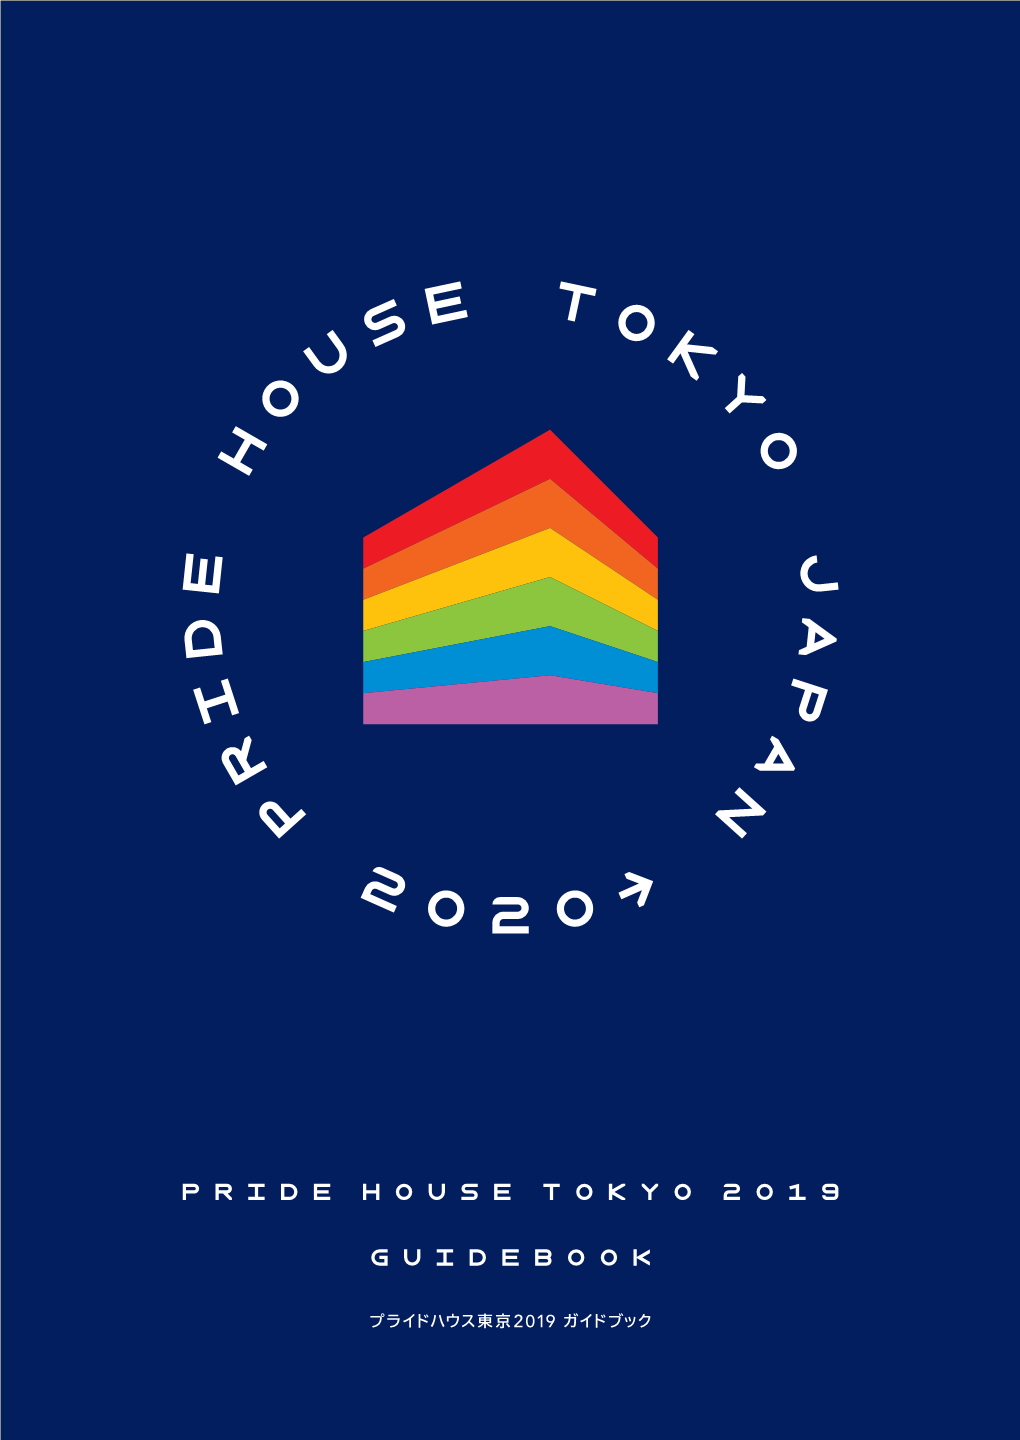 プライドハウス東京 2019 ガイドブック 1 2016年リオデジャネイロ五輪に合わせて設置され た「リオ・プライドハウス」のオープニングのもよう。 「プライドハウス」は a Scene from the Opening of Rio Pride House at Rio 2016